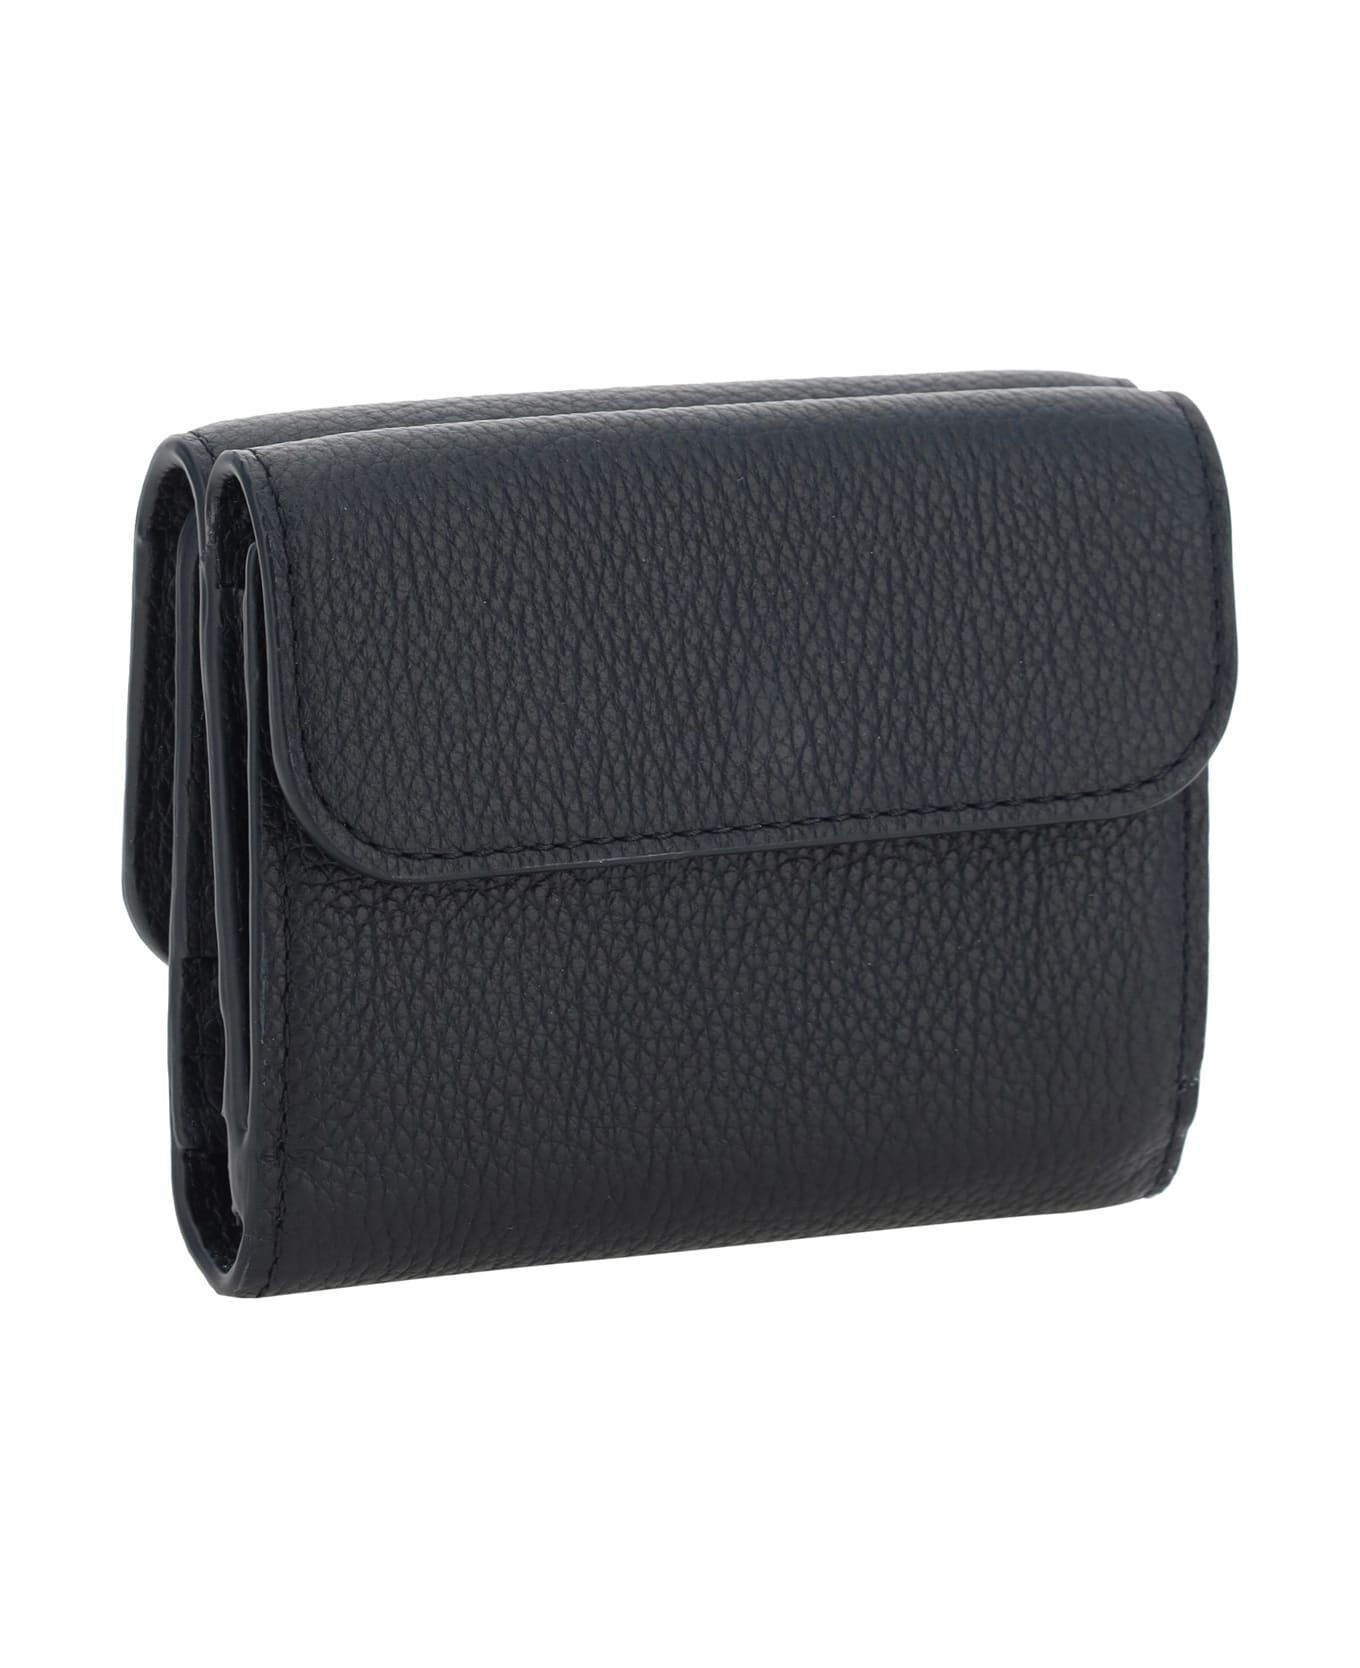 Chloé 'marcie' Wallet - Black 財布